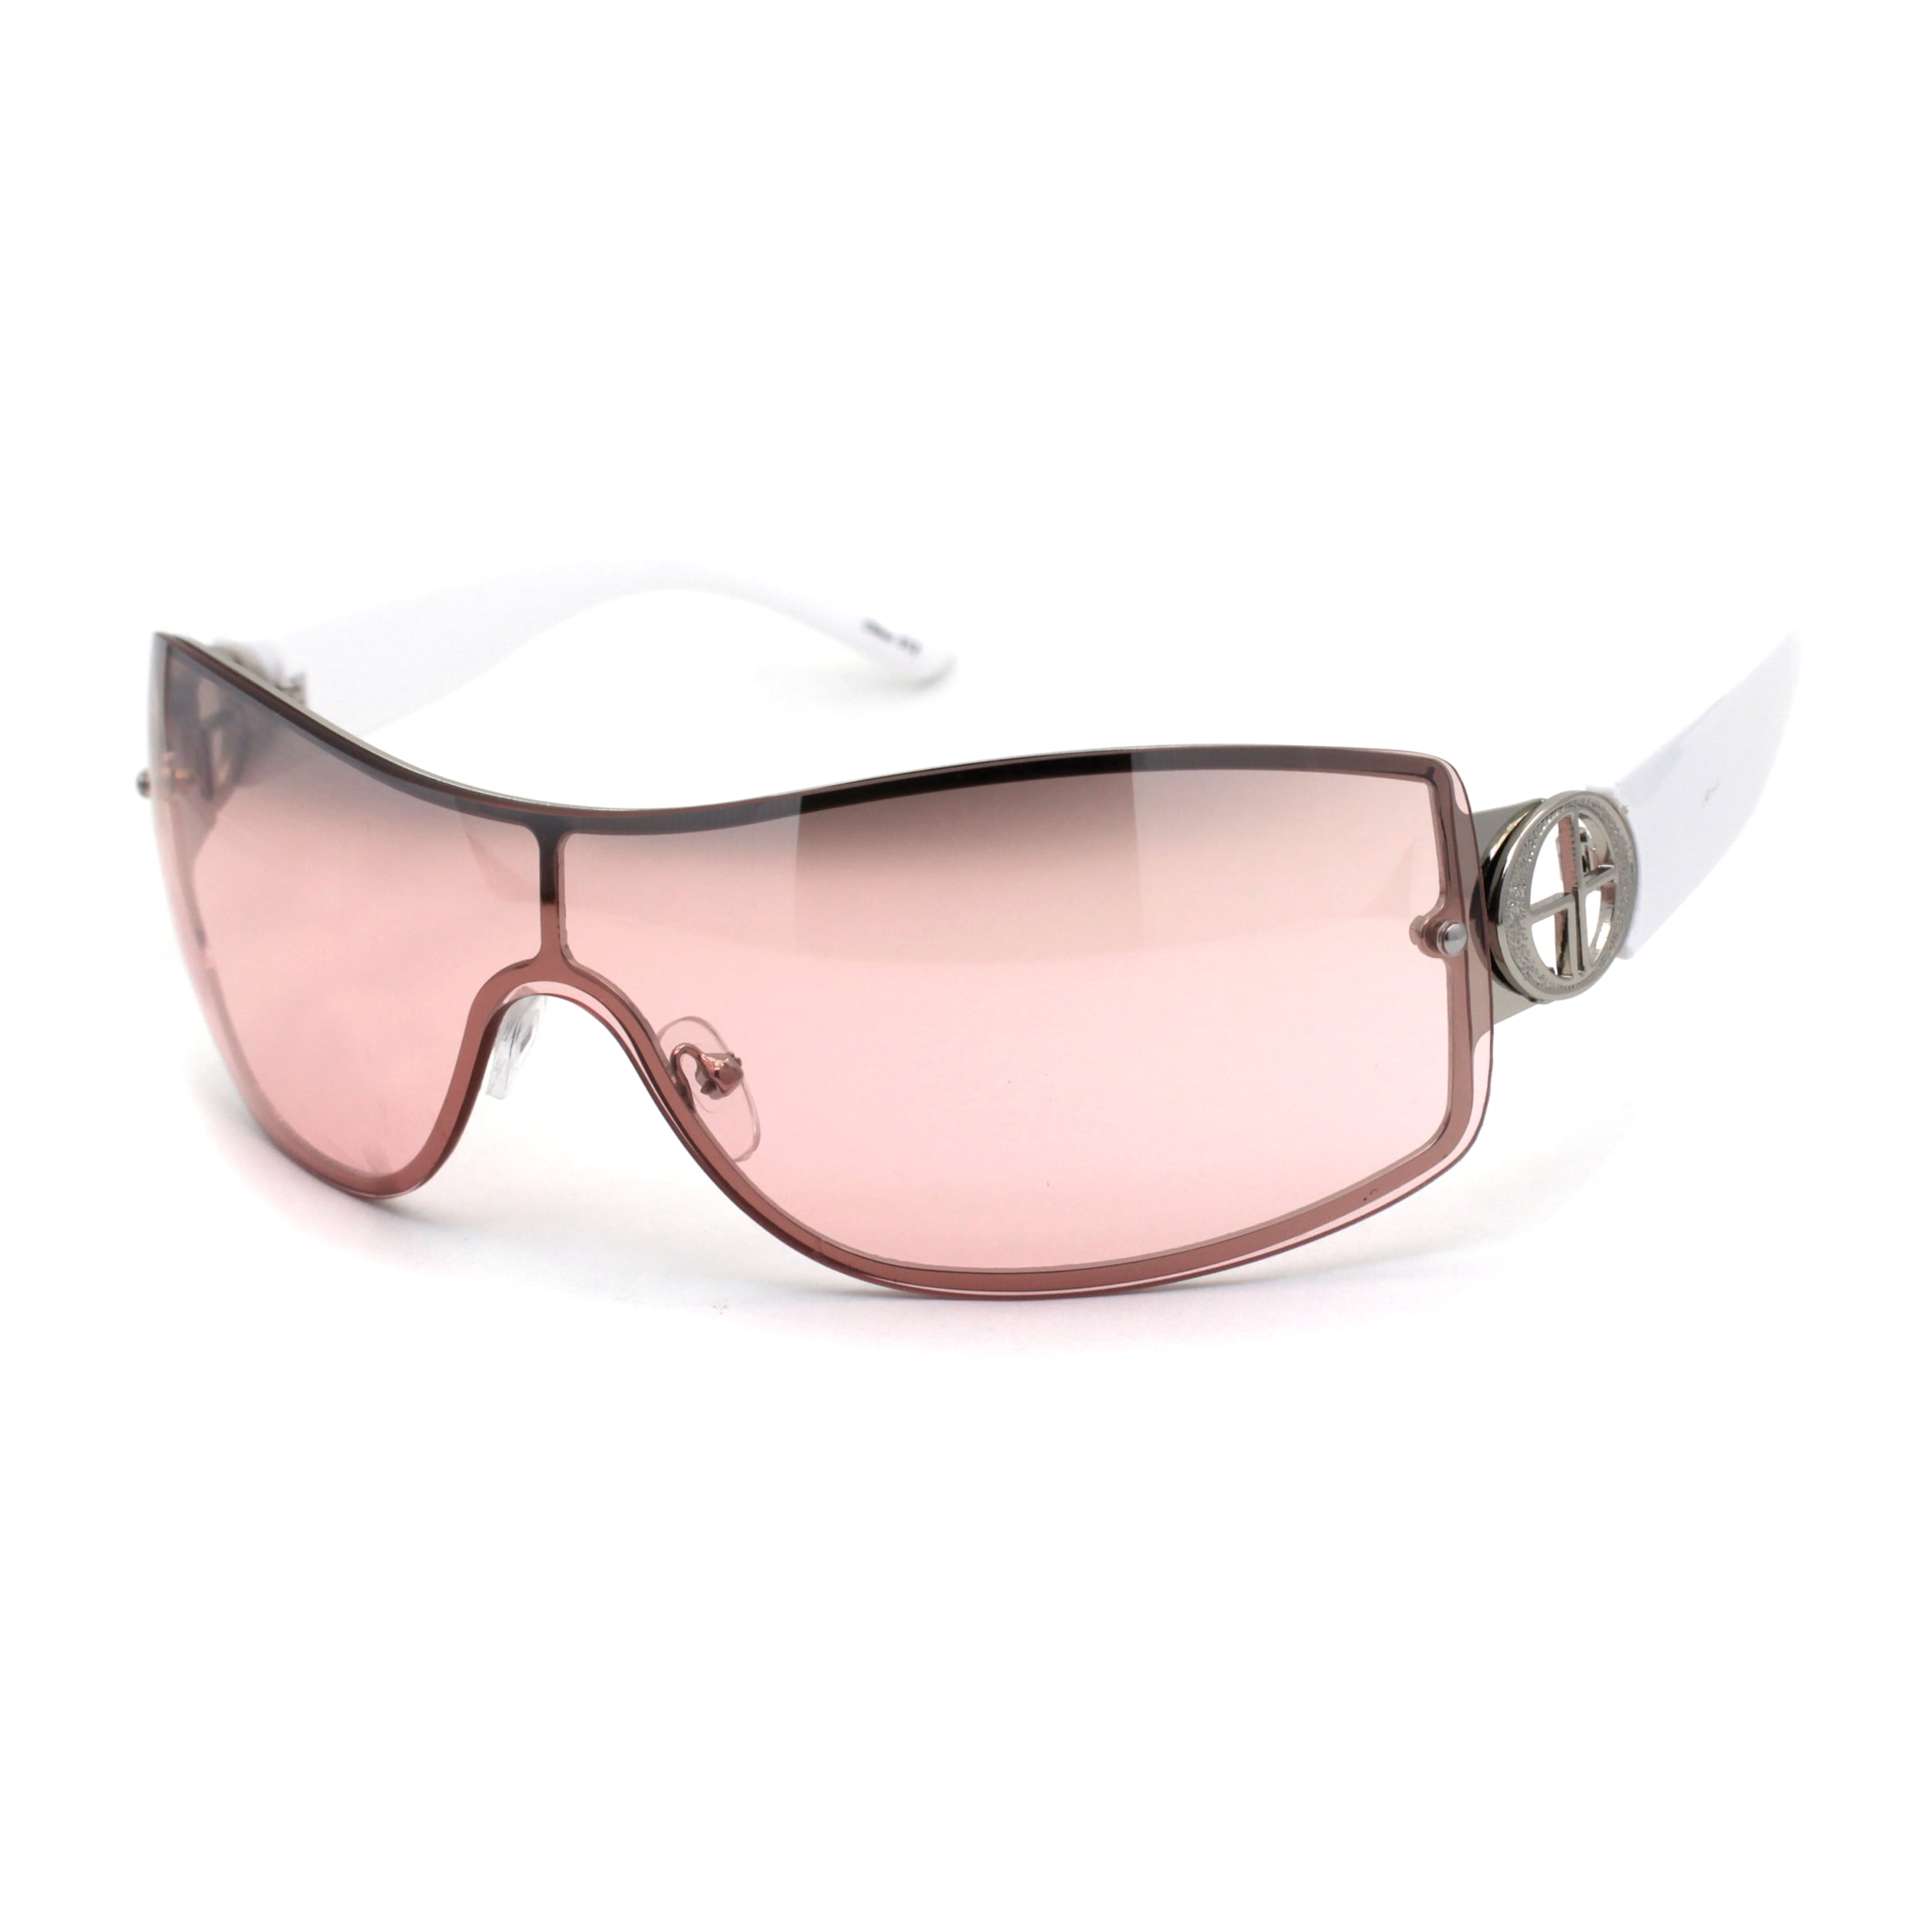 For Women's DG Eyewear Fashion Designer Large Shield Wrap Sunglasses 2032 Pink 